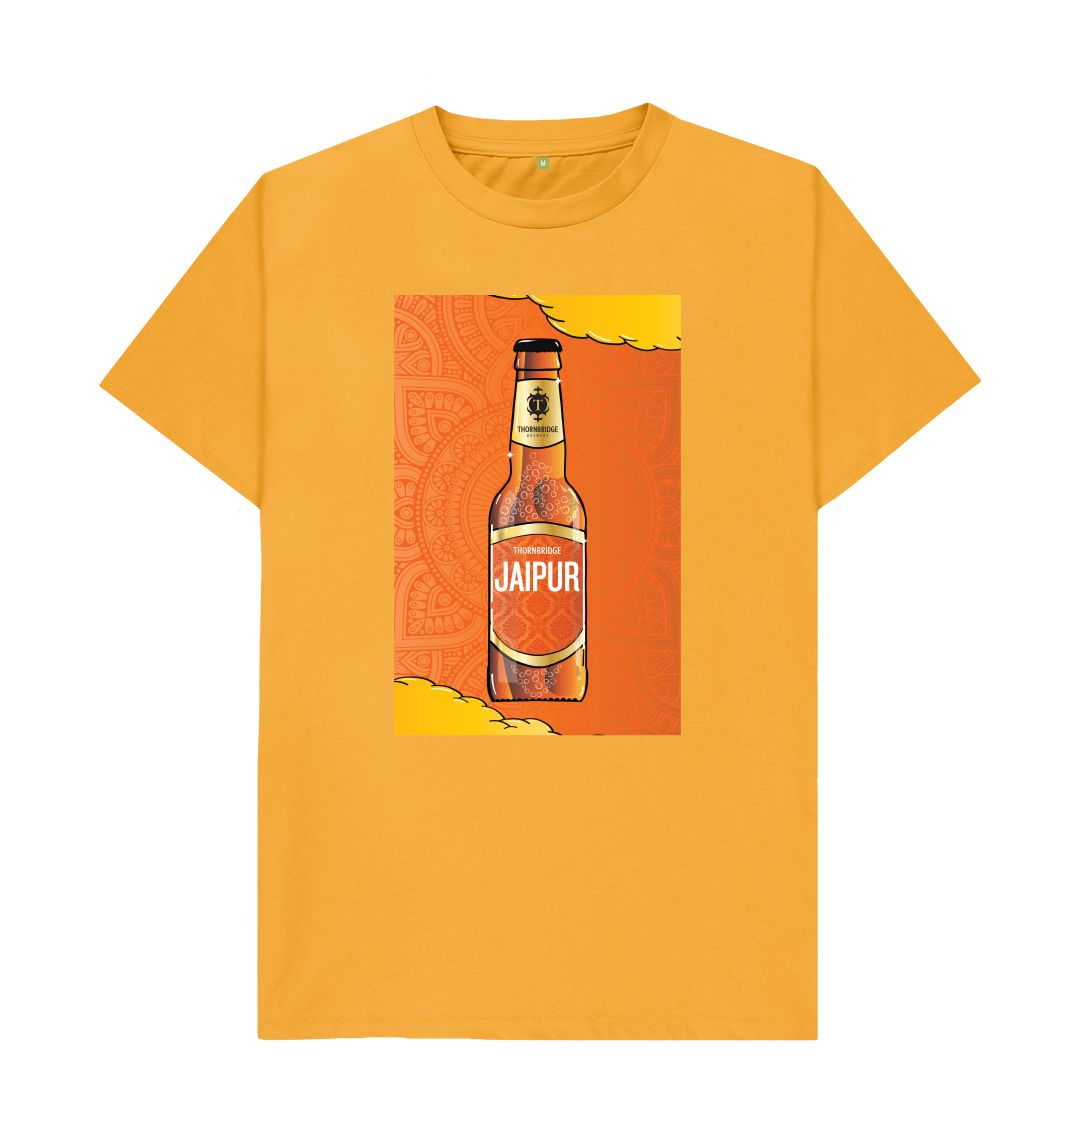 Jaipur TT bottle T shirt Printed T-shirt Thornbridge